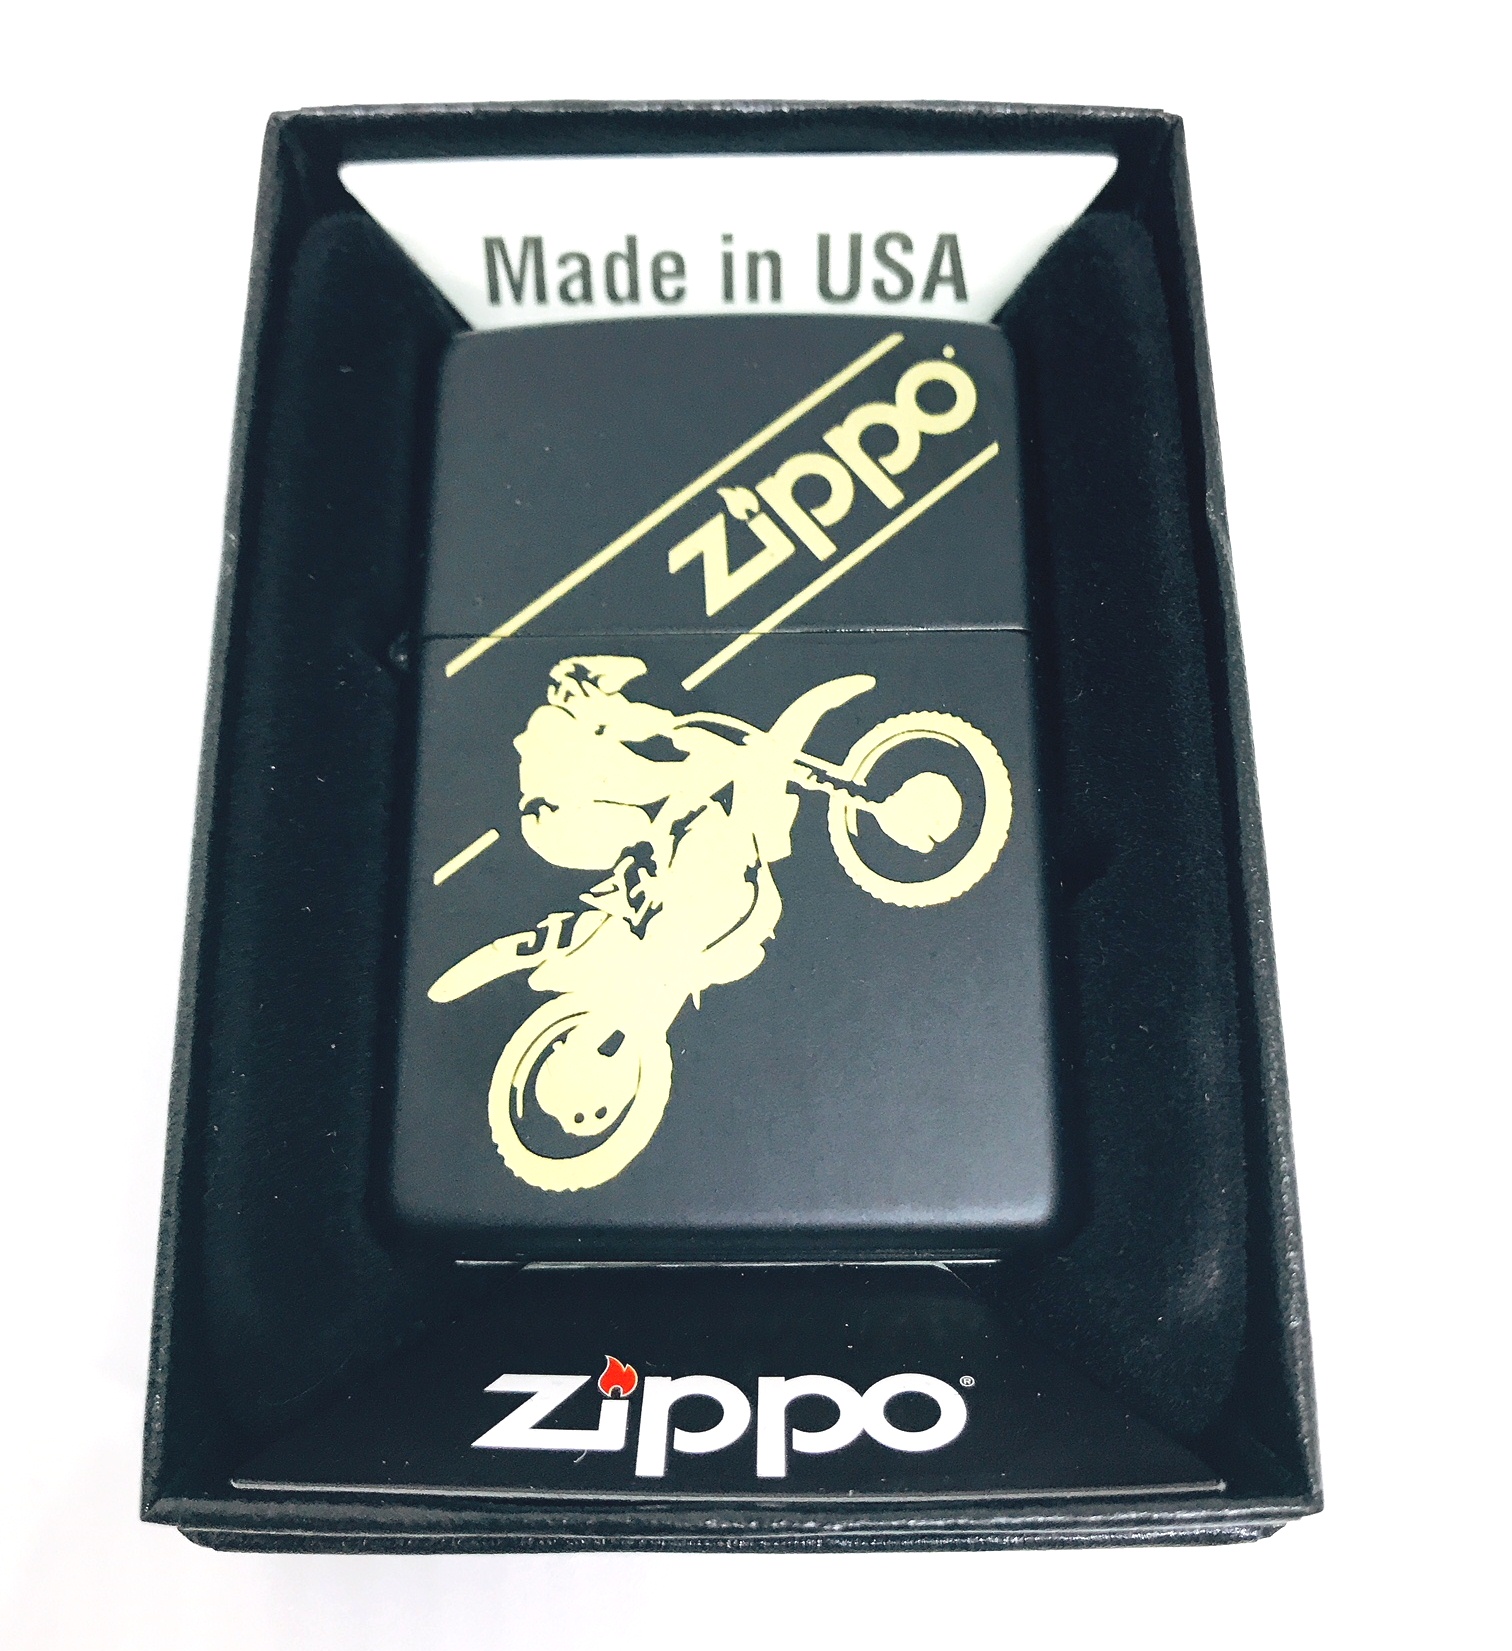 Hop quet zippo catalog Z625